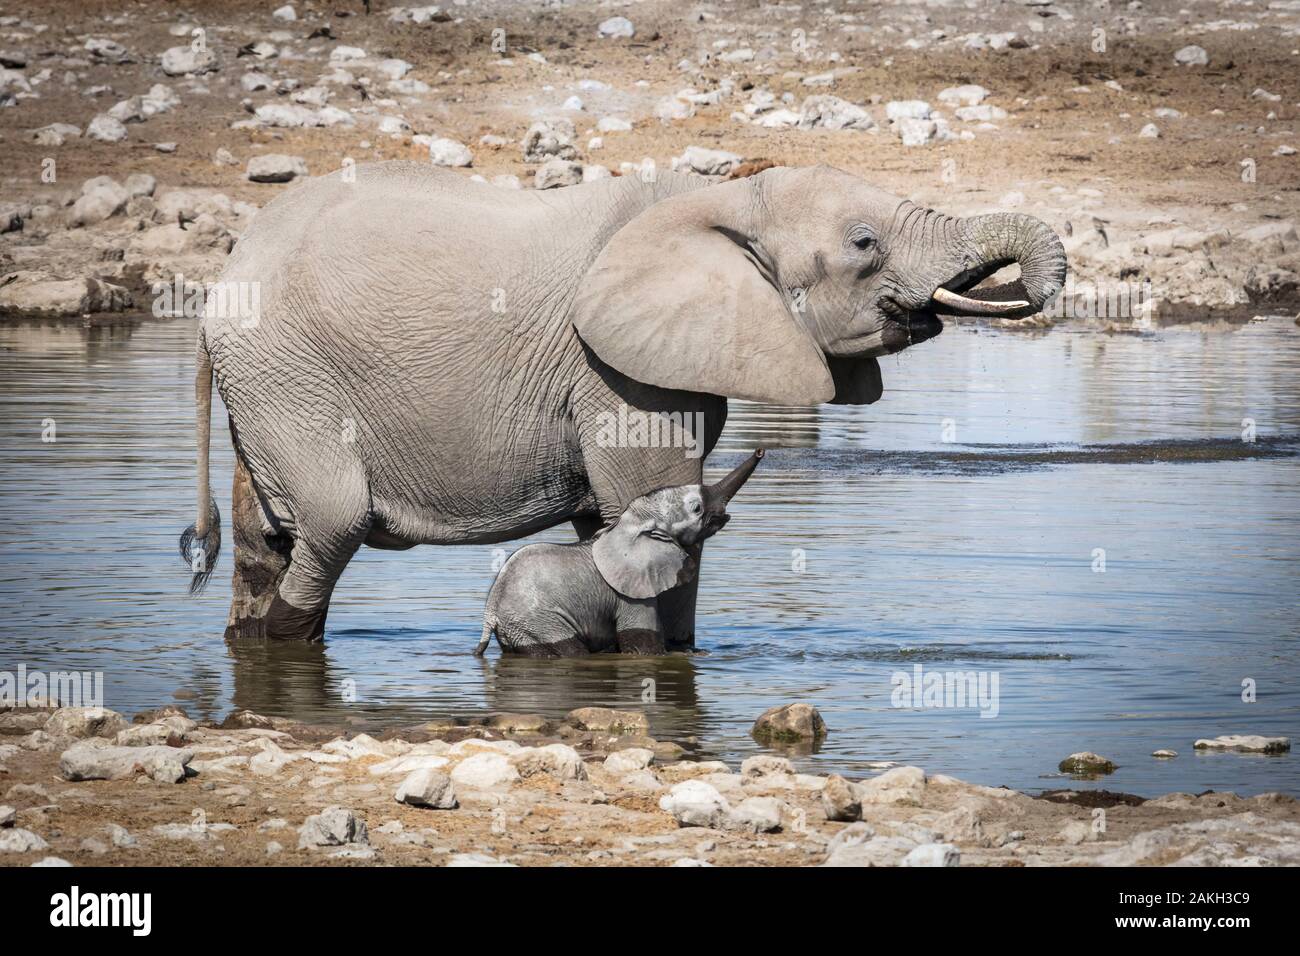 Namibia, Oshikoto province, Etosha National Park, african bush elephant (Loxodonta africana), baby elephant and his mother at a water hole Stock Photo